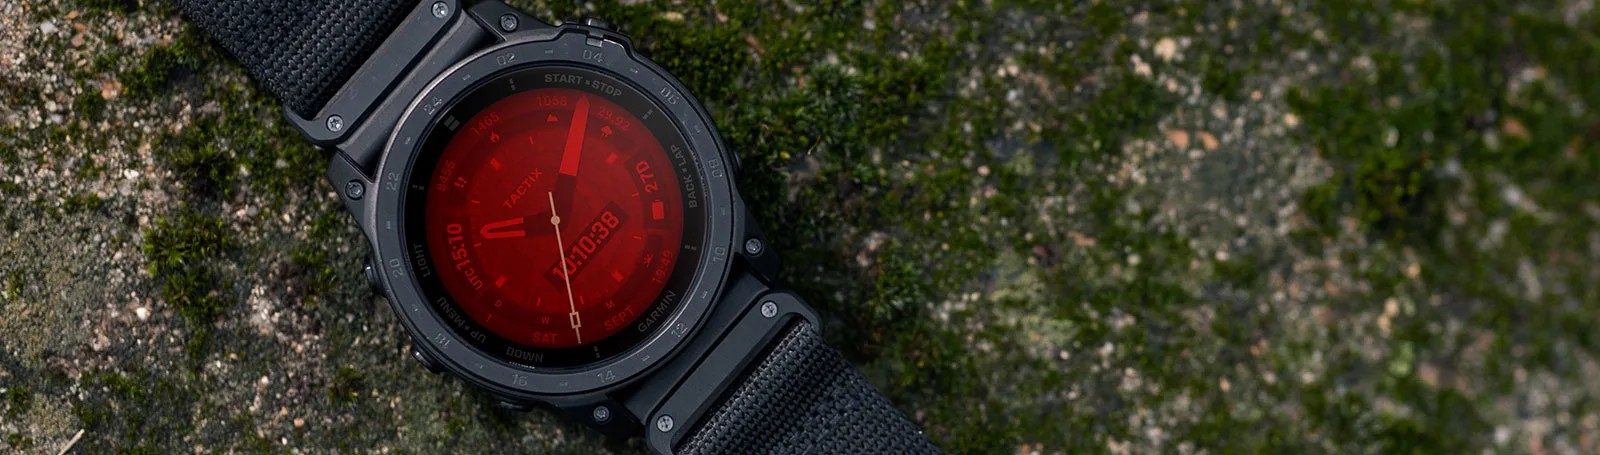 компания garmin представляет новые тактические смарт-часы tactix 7 amoled edition